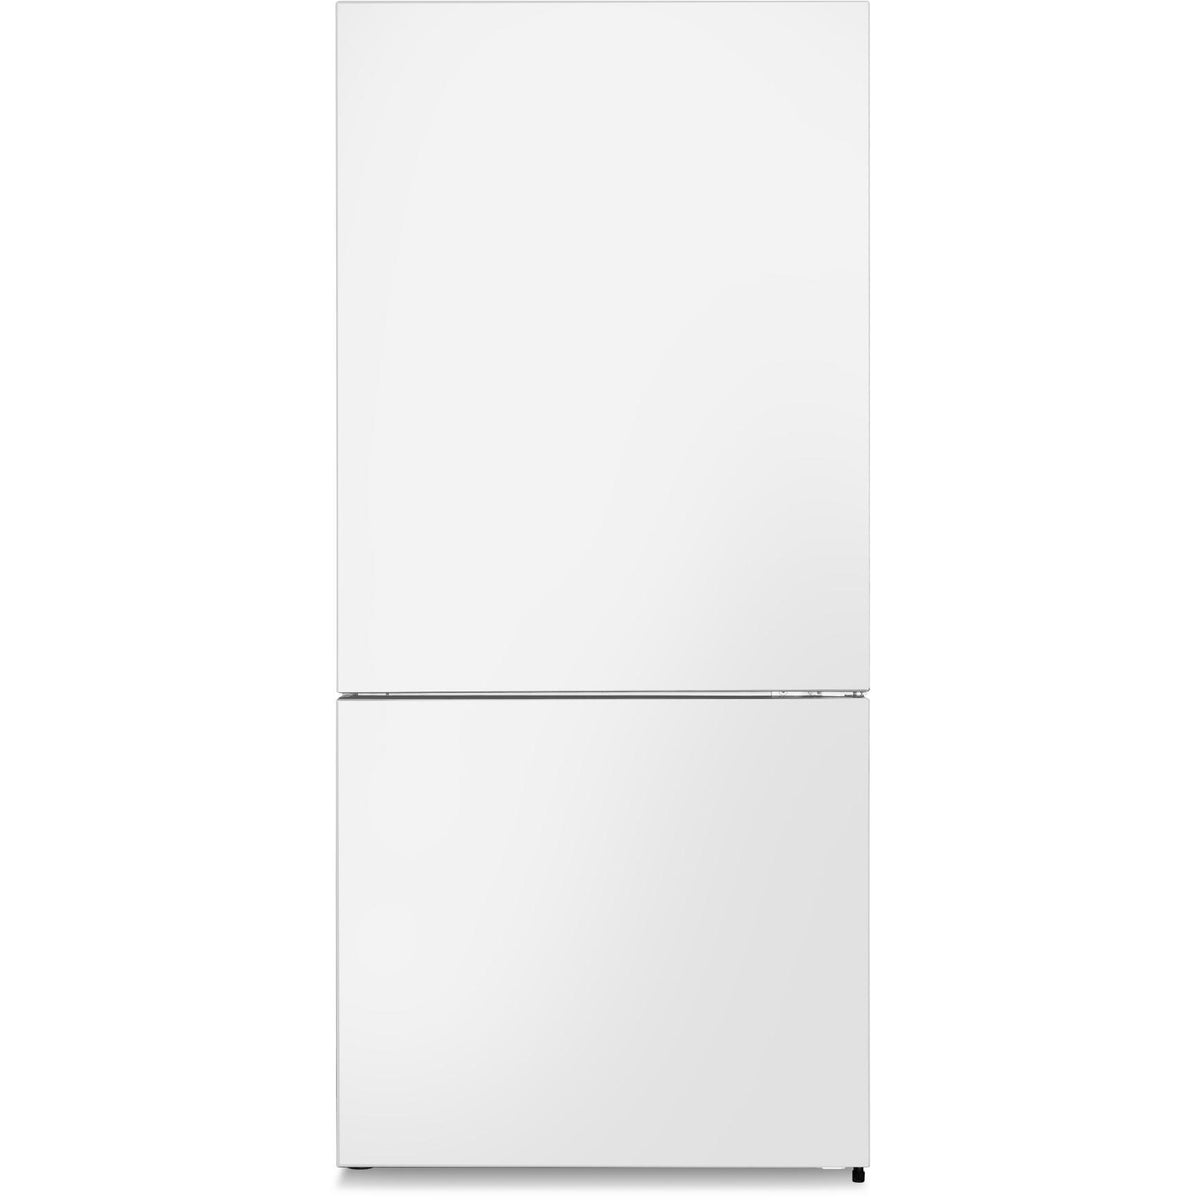 31-inch, 17 cu. ft. Counter-Depth Bottom Freezer Refrigerator ARBM172WE IMAGE 1